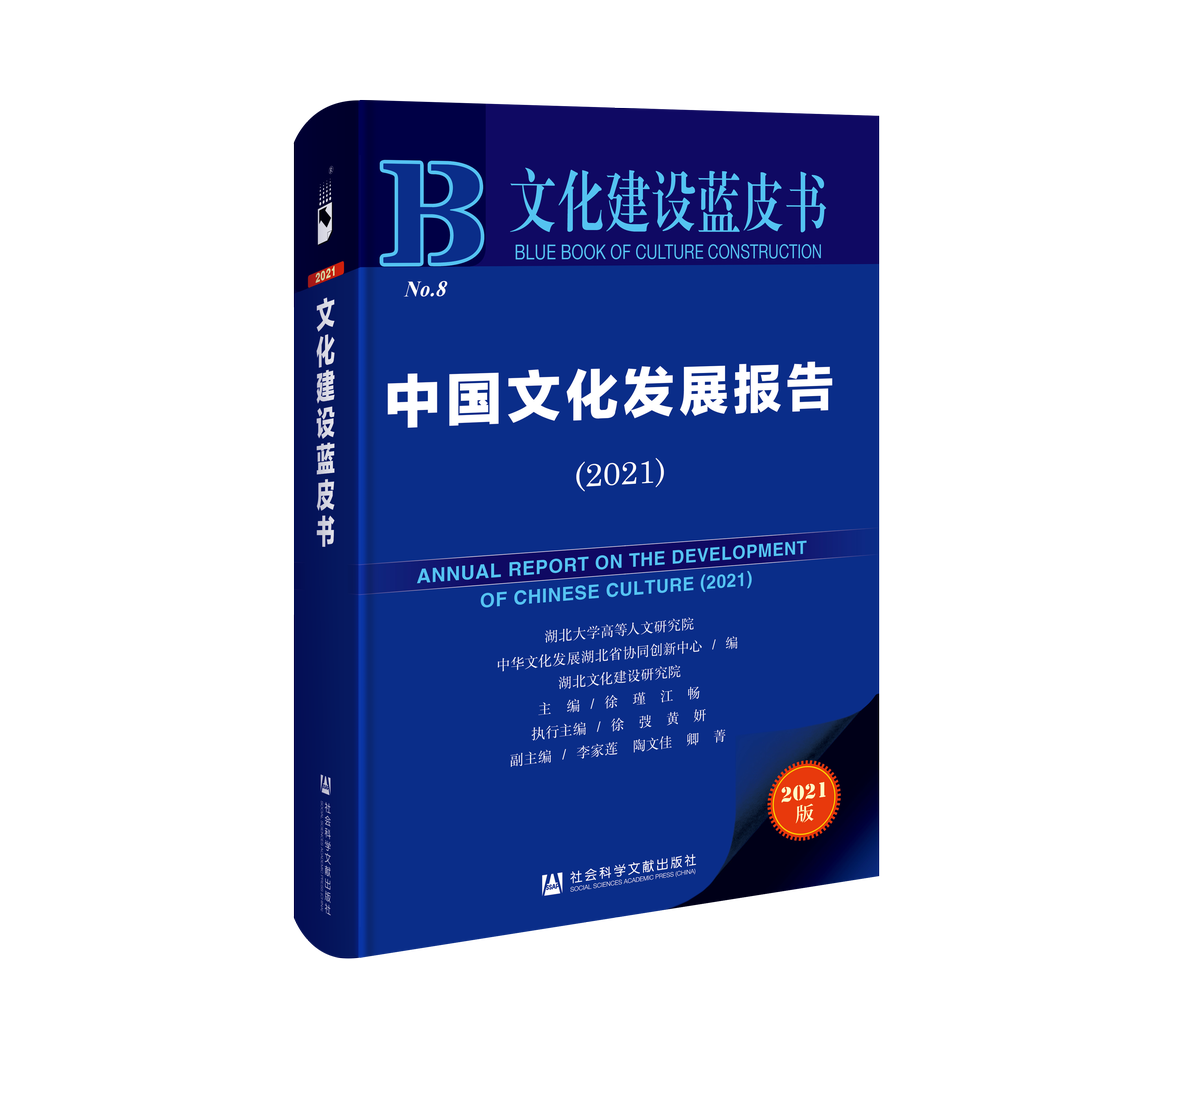 《文化建设蓝皮书•中国文化发展报告（2021）》在汉发布